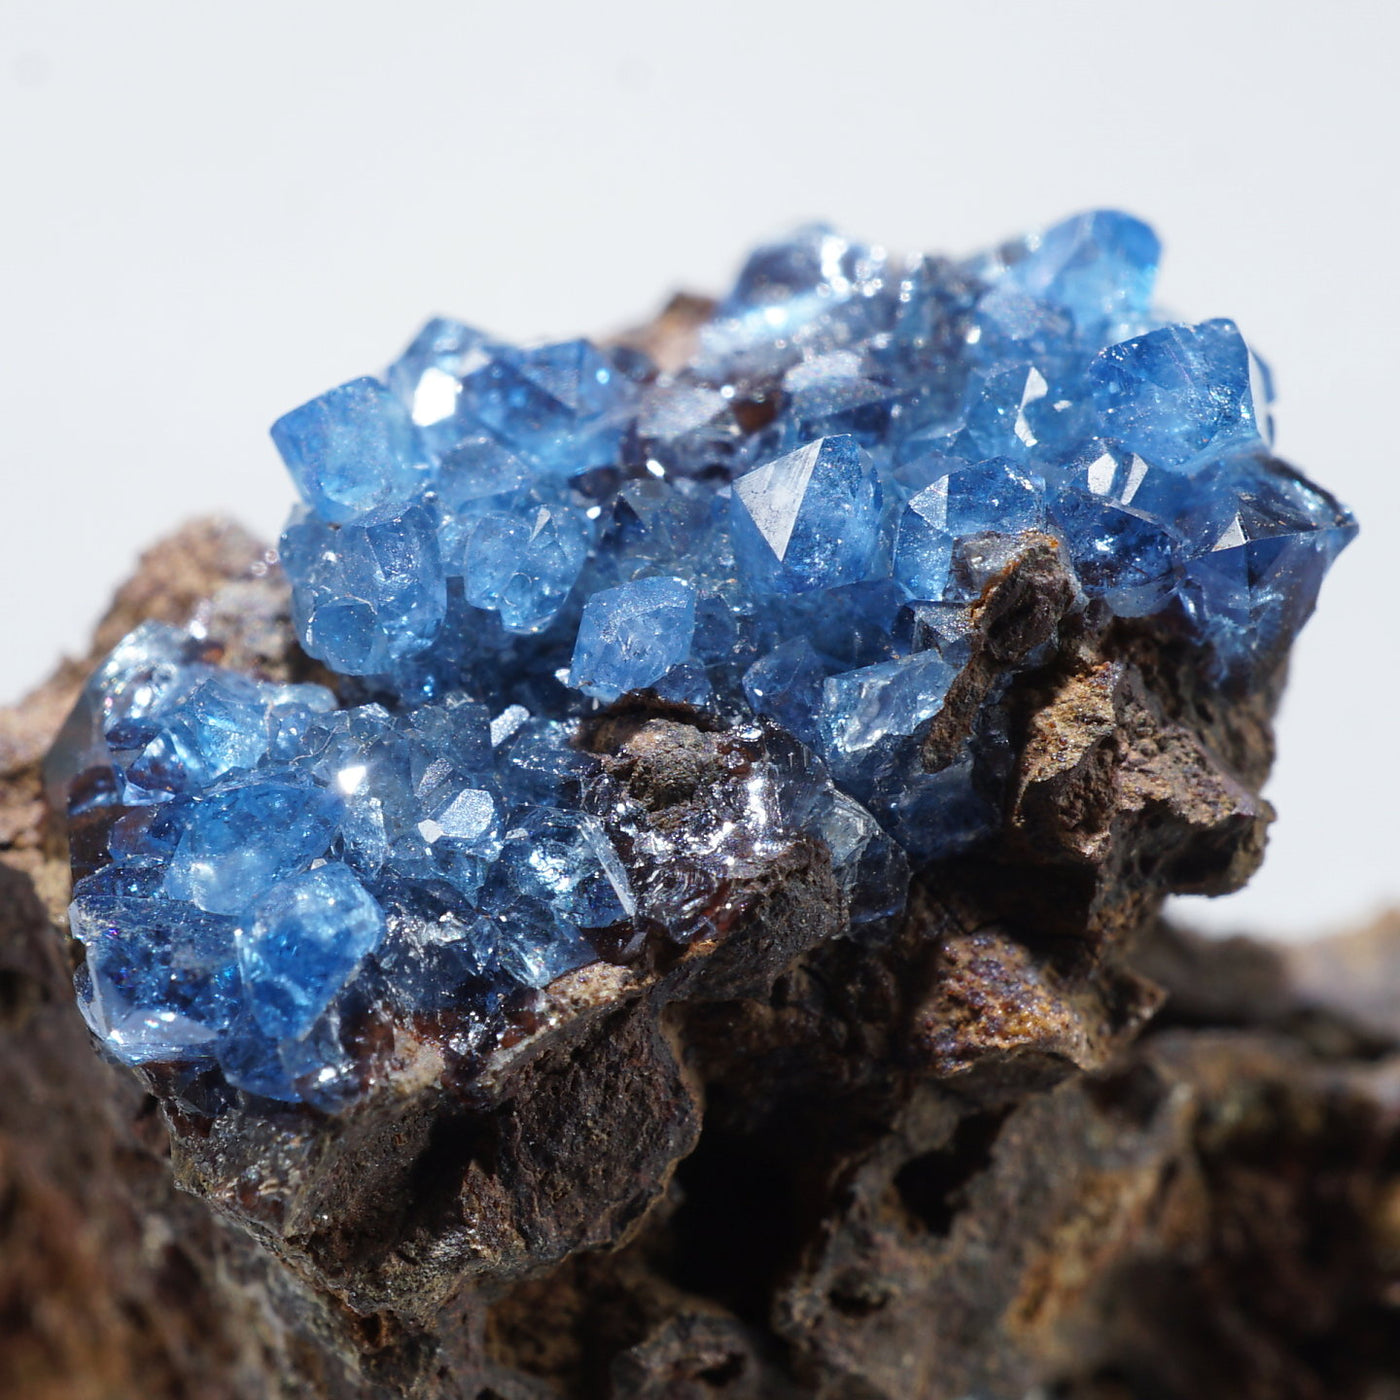 メキシコ産 Scorodite(スコロダイト) – 天然石ハッピーギフト